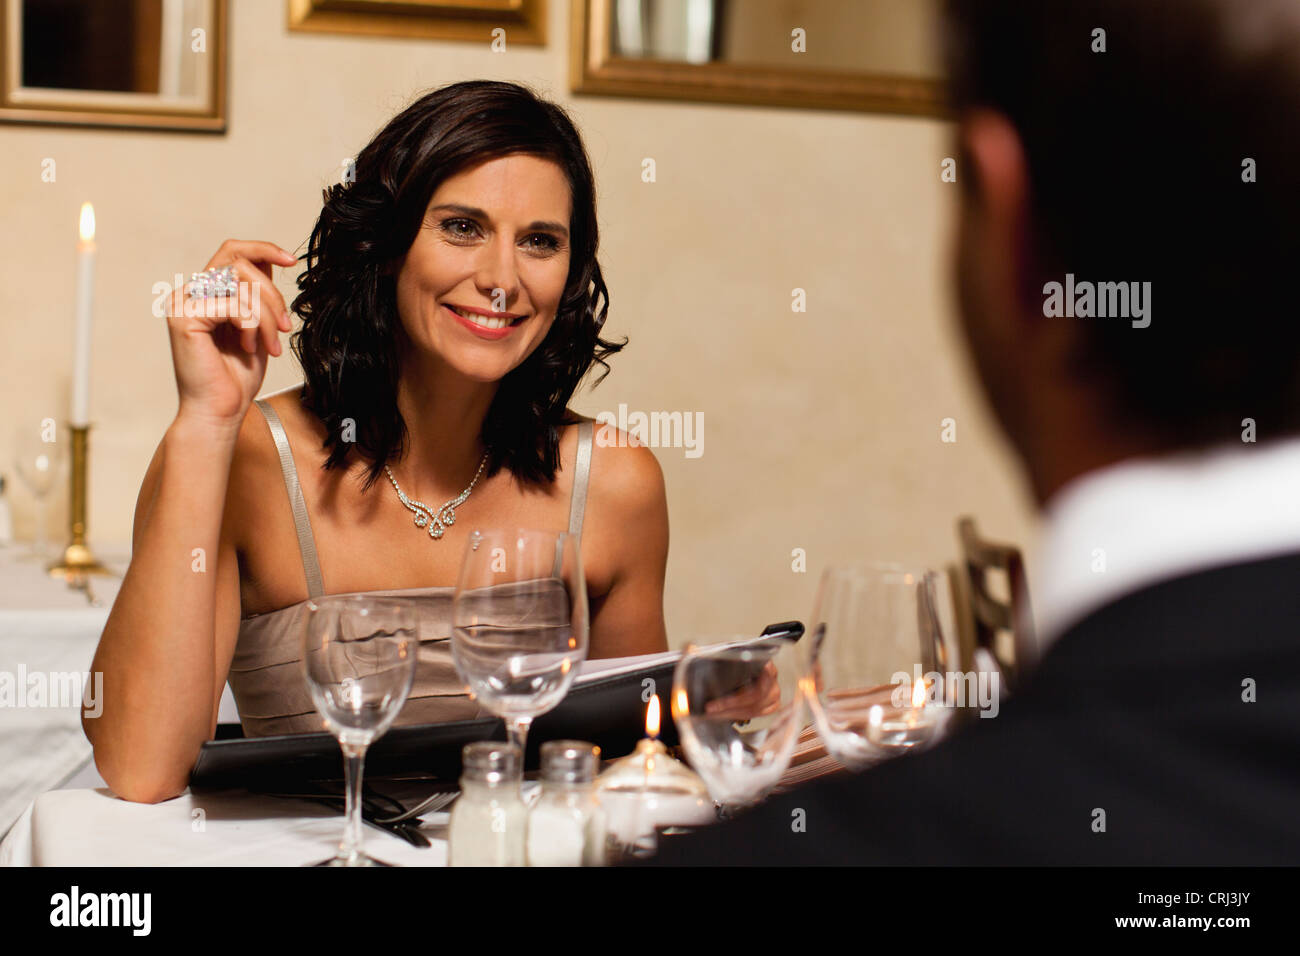 Couple having dinner in restaurant Stock Photo